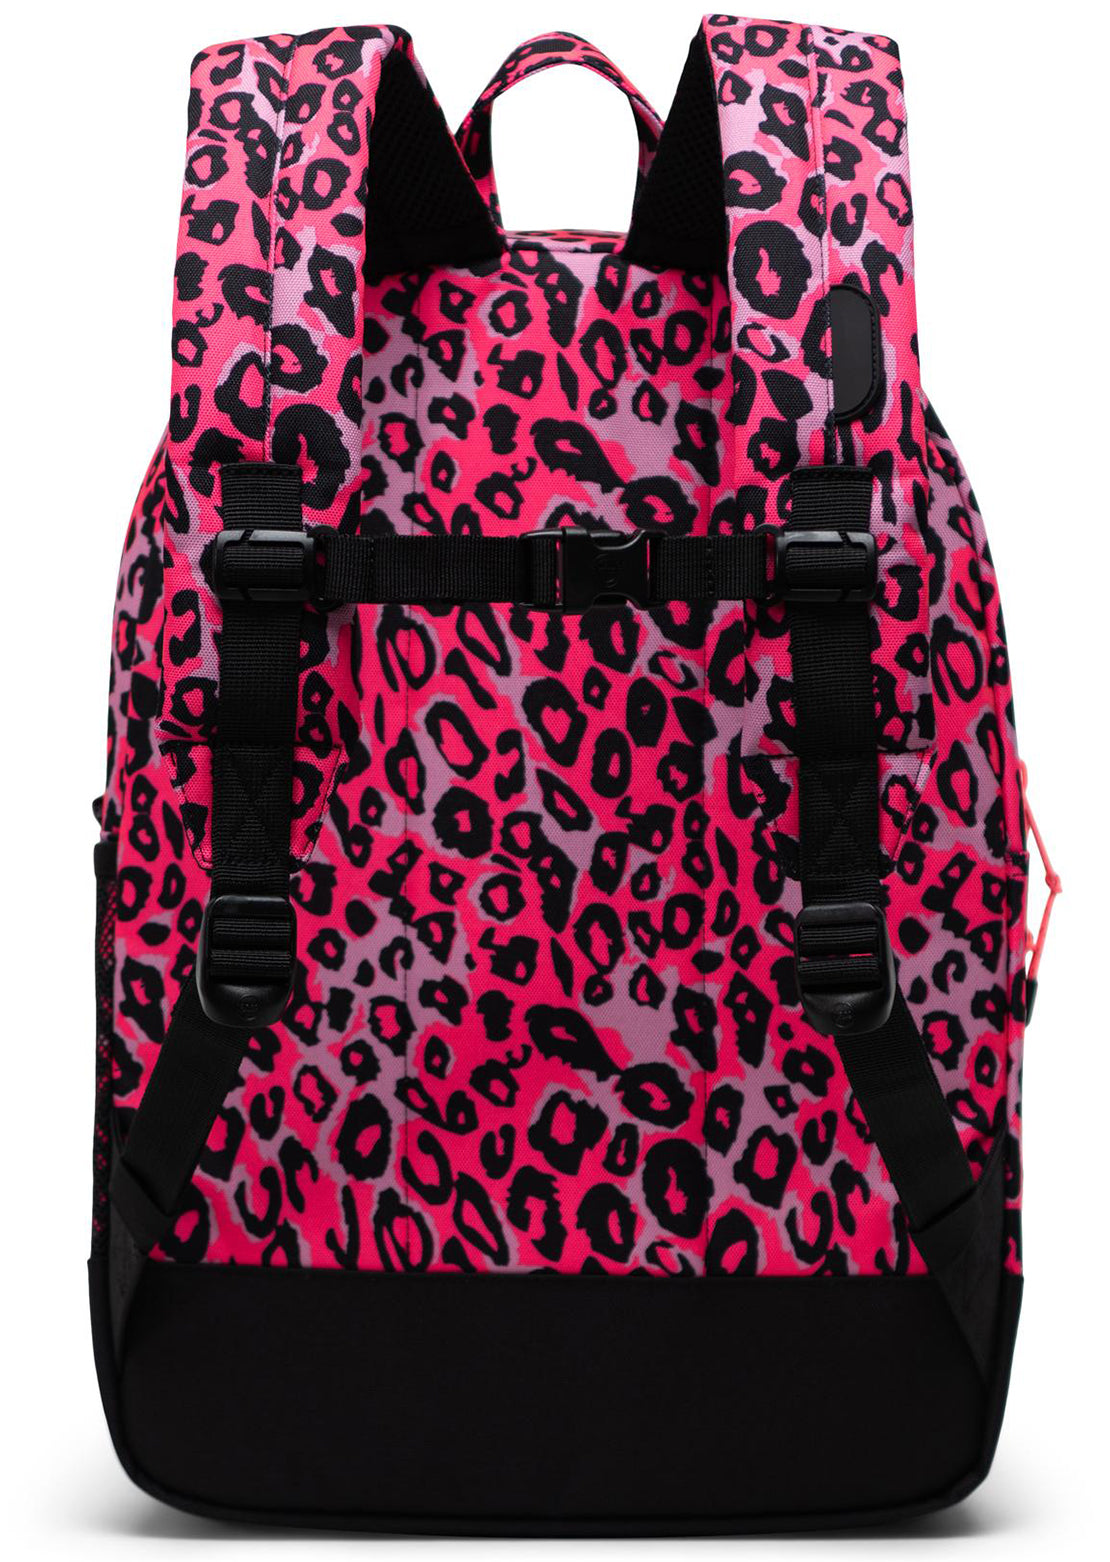 Herschel Junior Heritage XL Backpack Cheetah Camo Neon Pink/Black